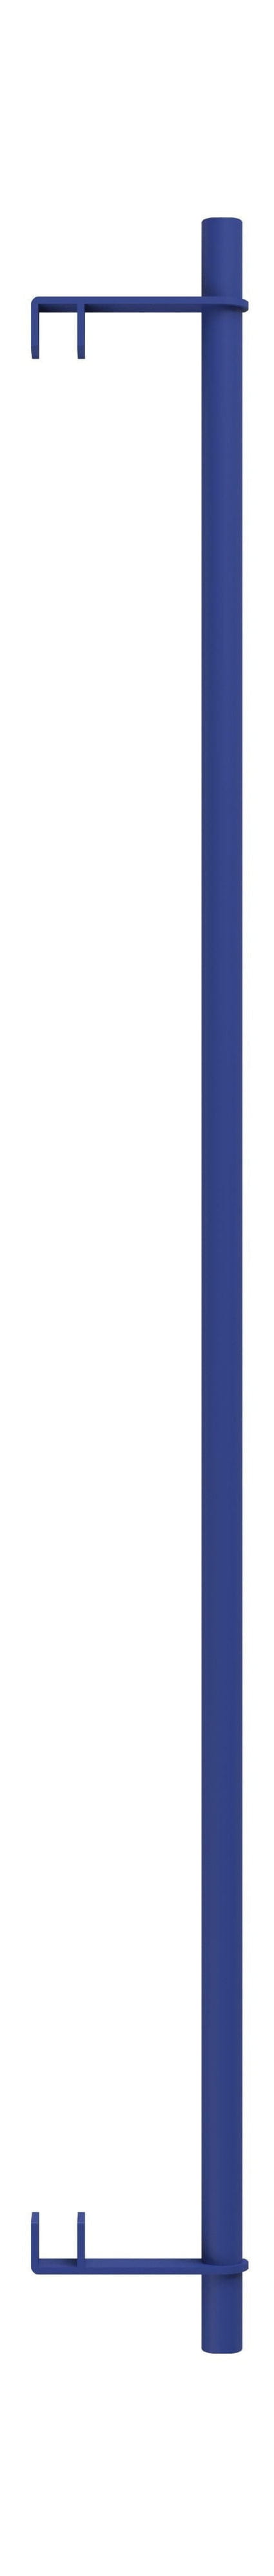 Systém regálů Moebe/Regály na zdi bar 85 cm, tmavě modrá